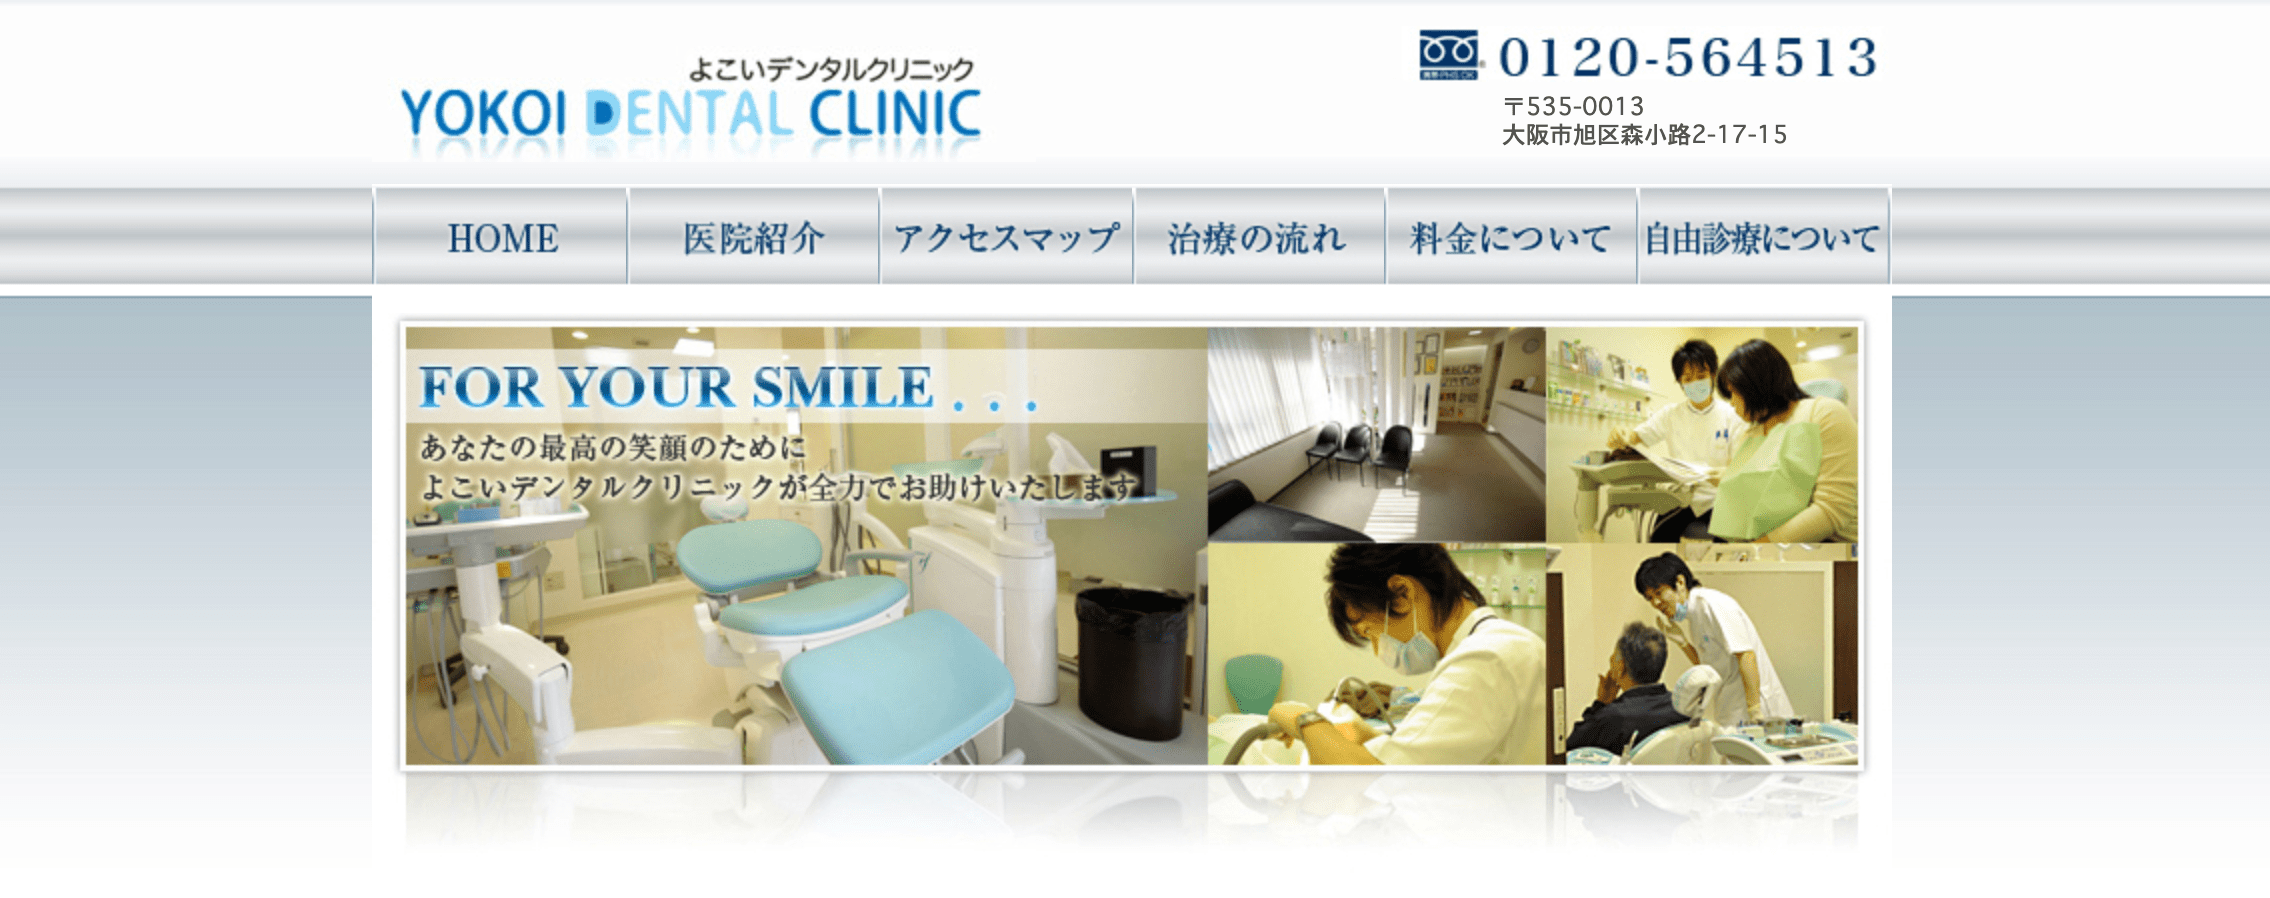 大阪市で評判のホワイトニングにおすすめの歯科クリニック10選 よこいデンタルクリニック